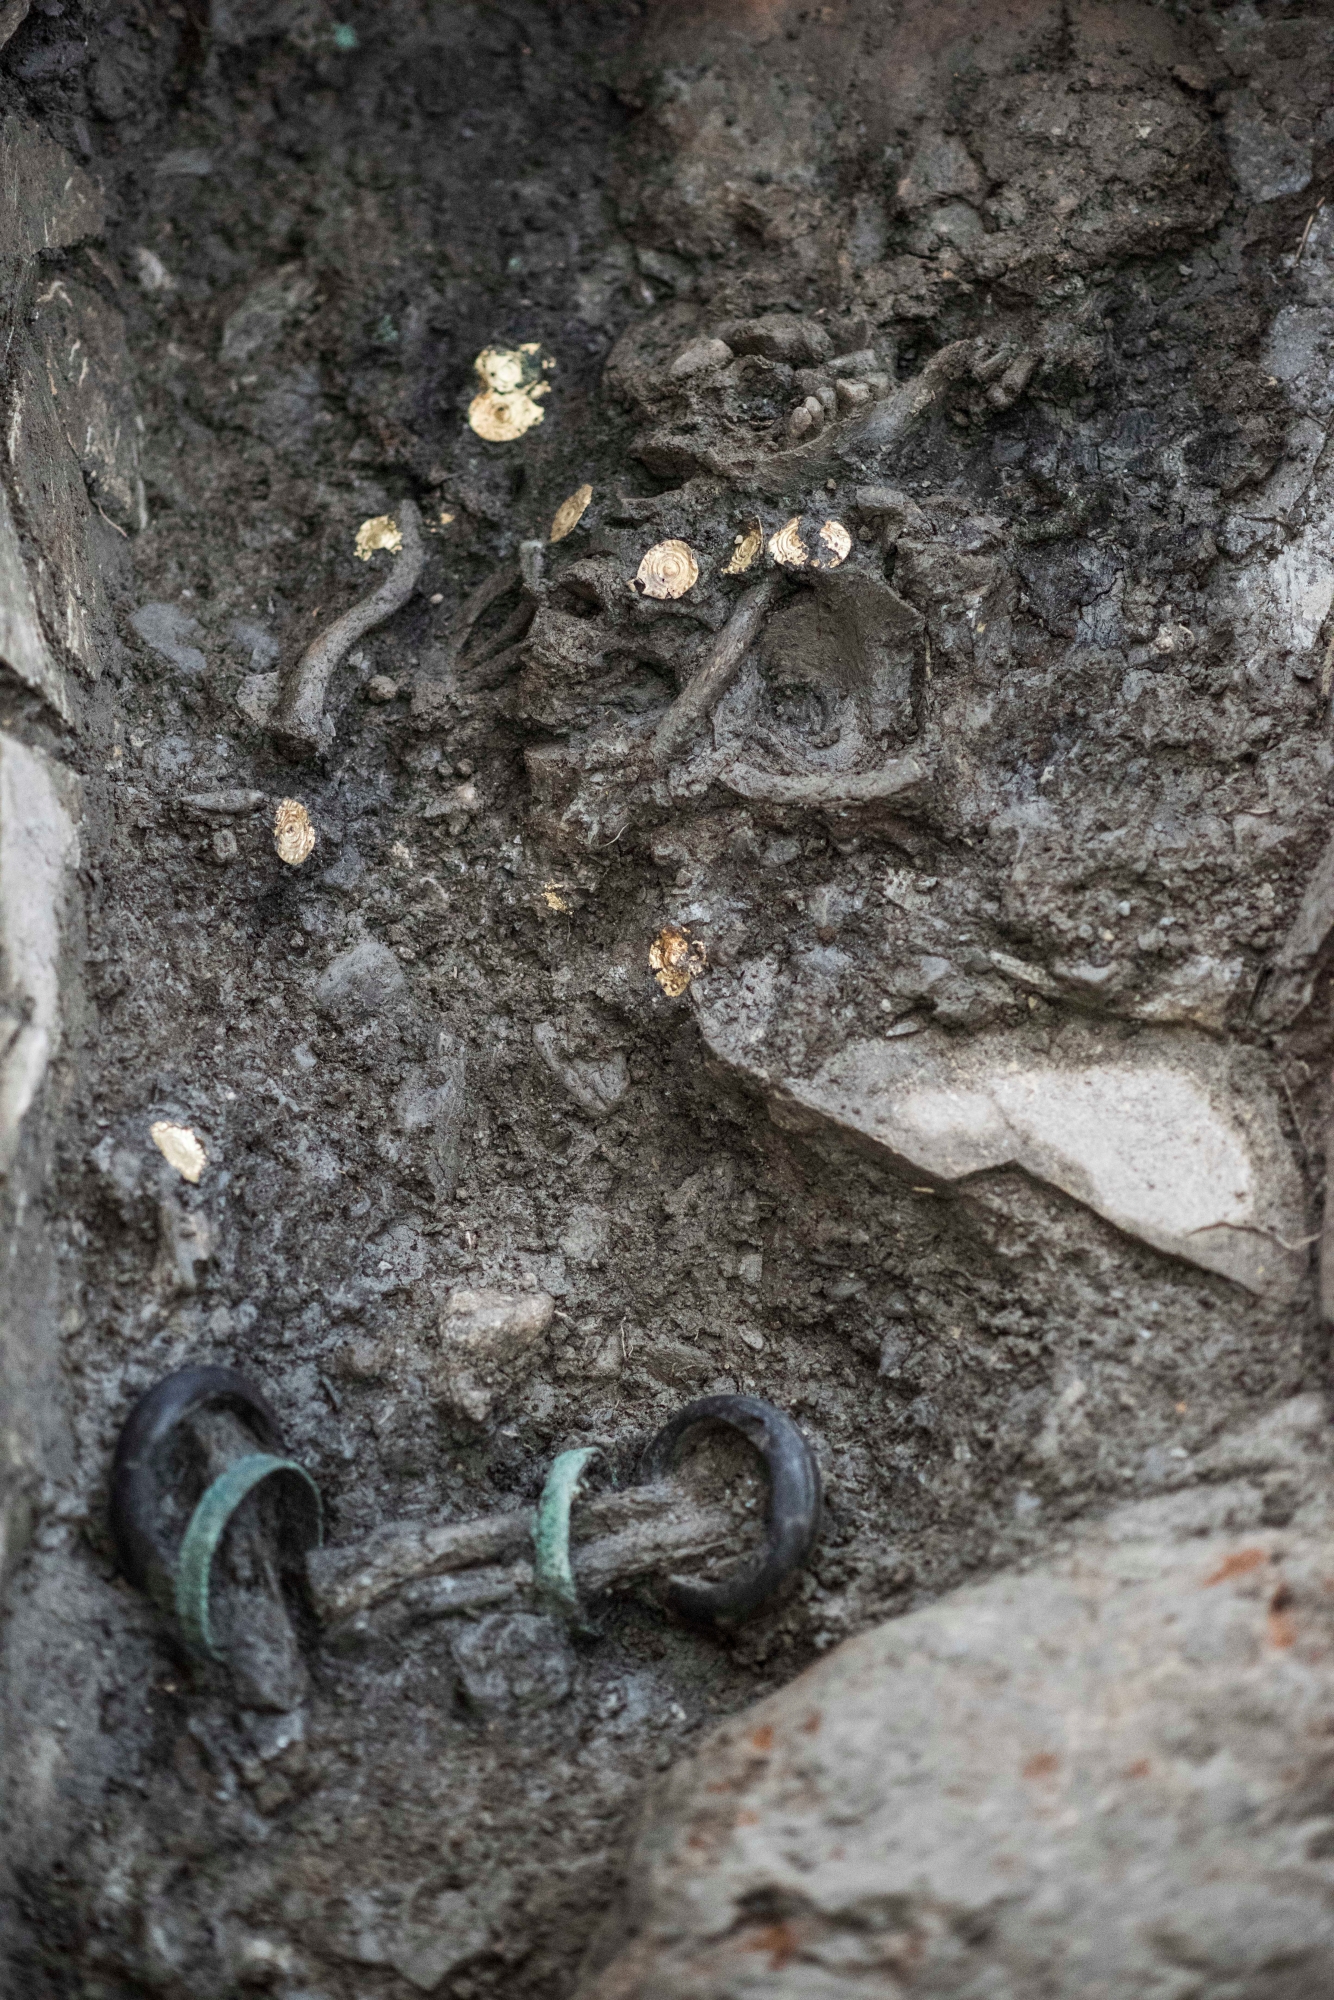 Suivit des fouilles archéologique au Nord de la ville de Sion. Une tombe exhumée révèle un squelette avec des bracelets en bronze et un collier en or. Les Archéologues François Mariethoz et Flamur Dalloshi se penchent sur ces êtres du passé.